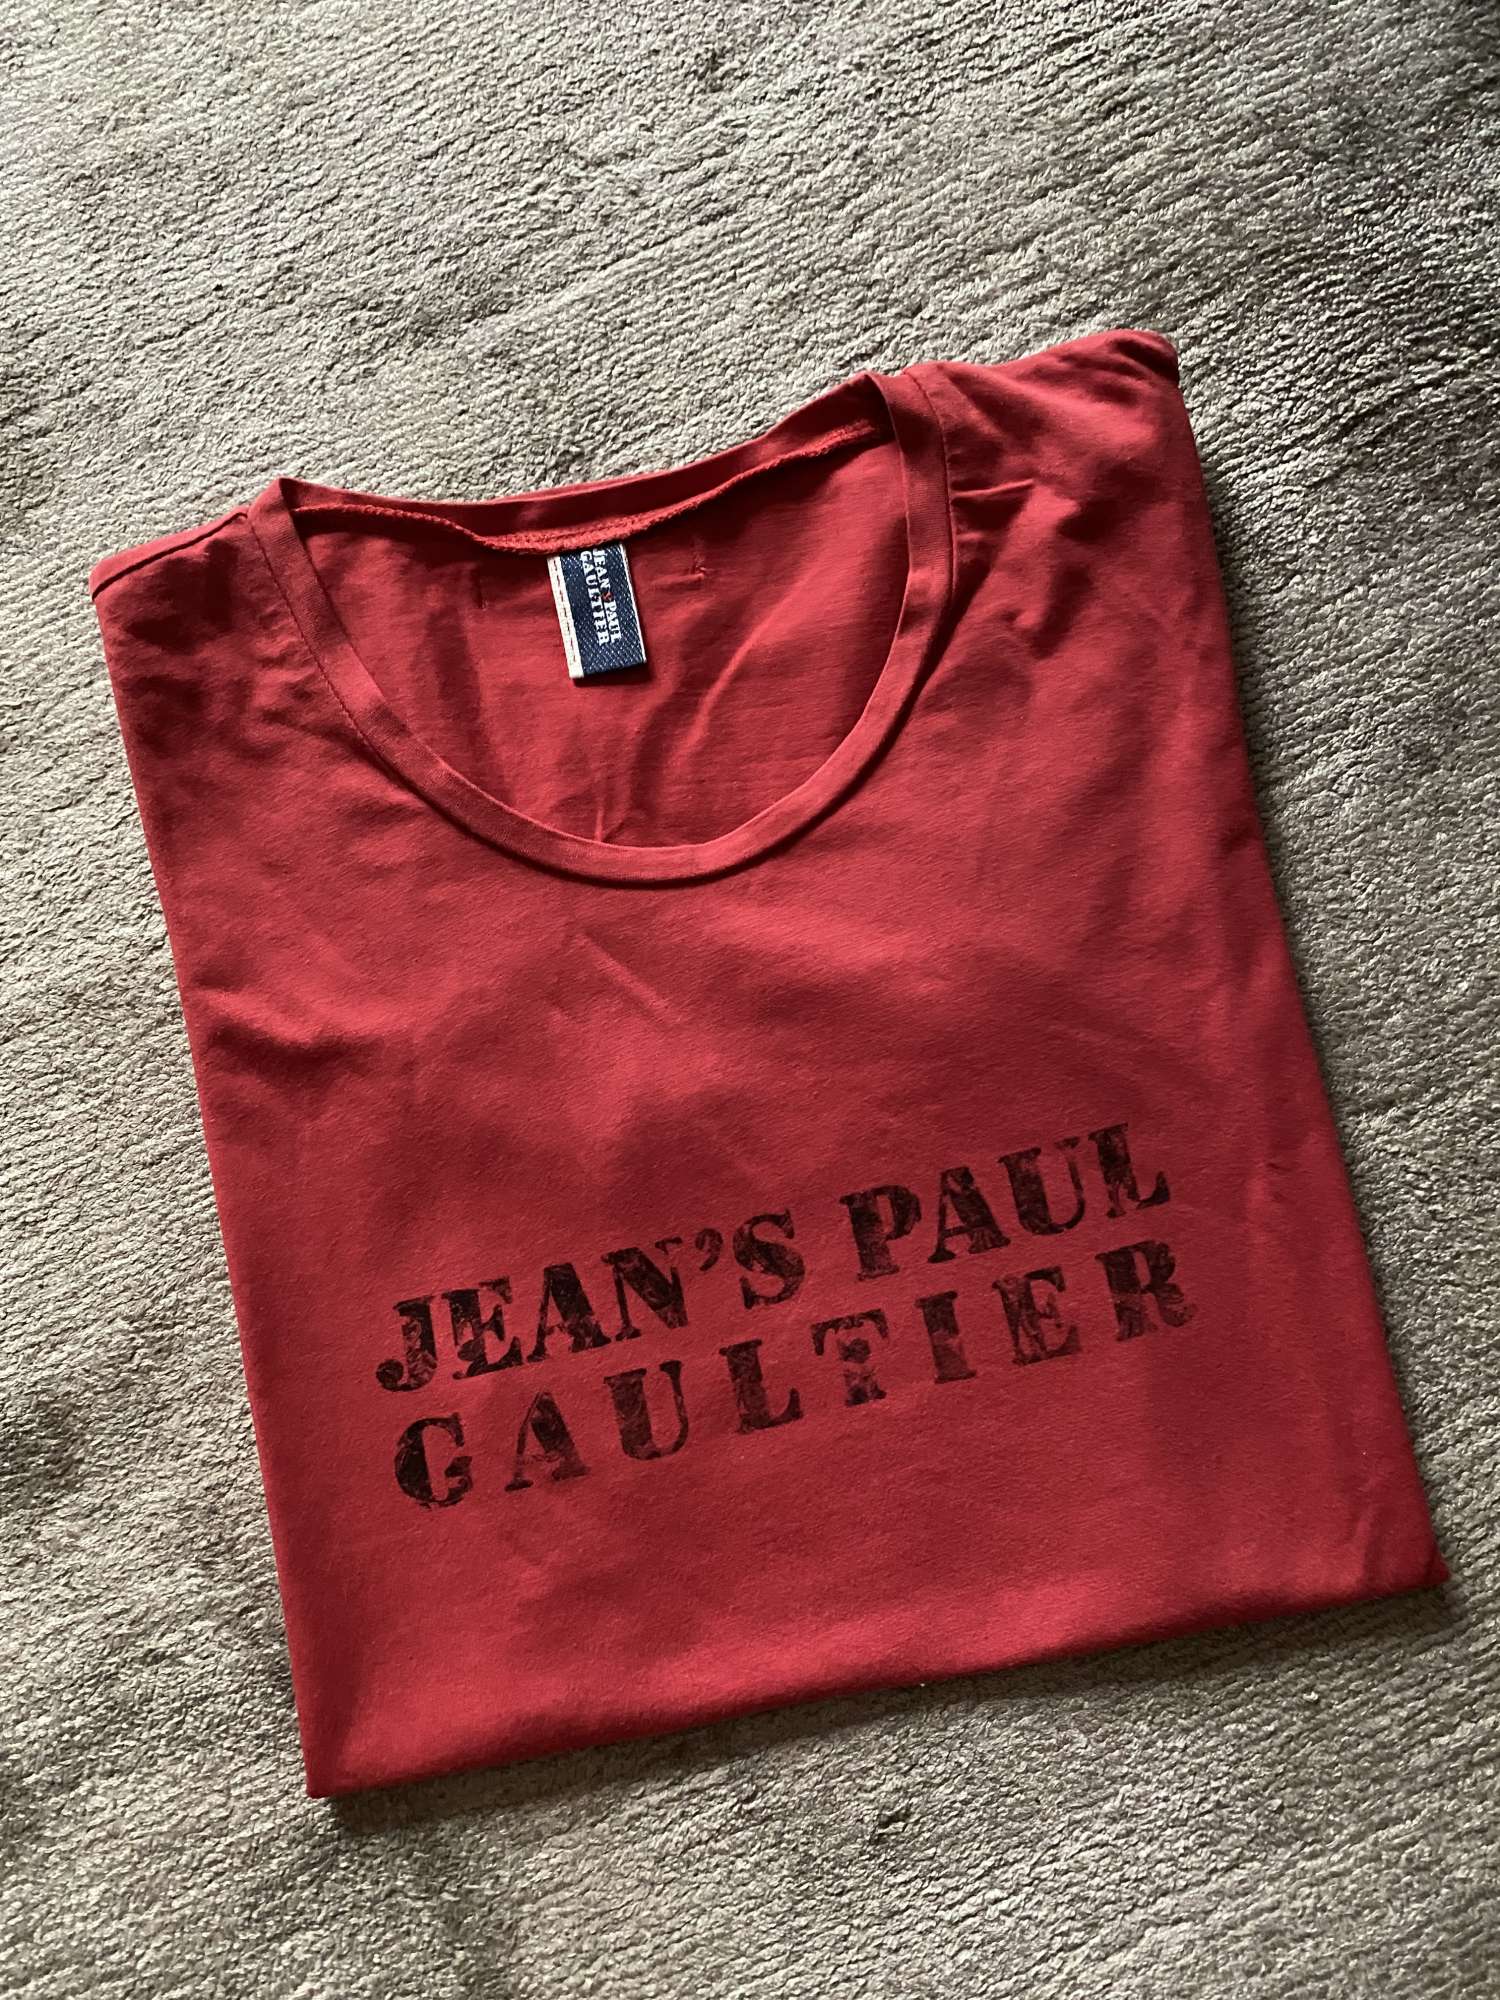 J.P. Gaultier tričko